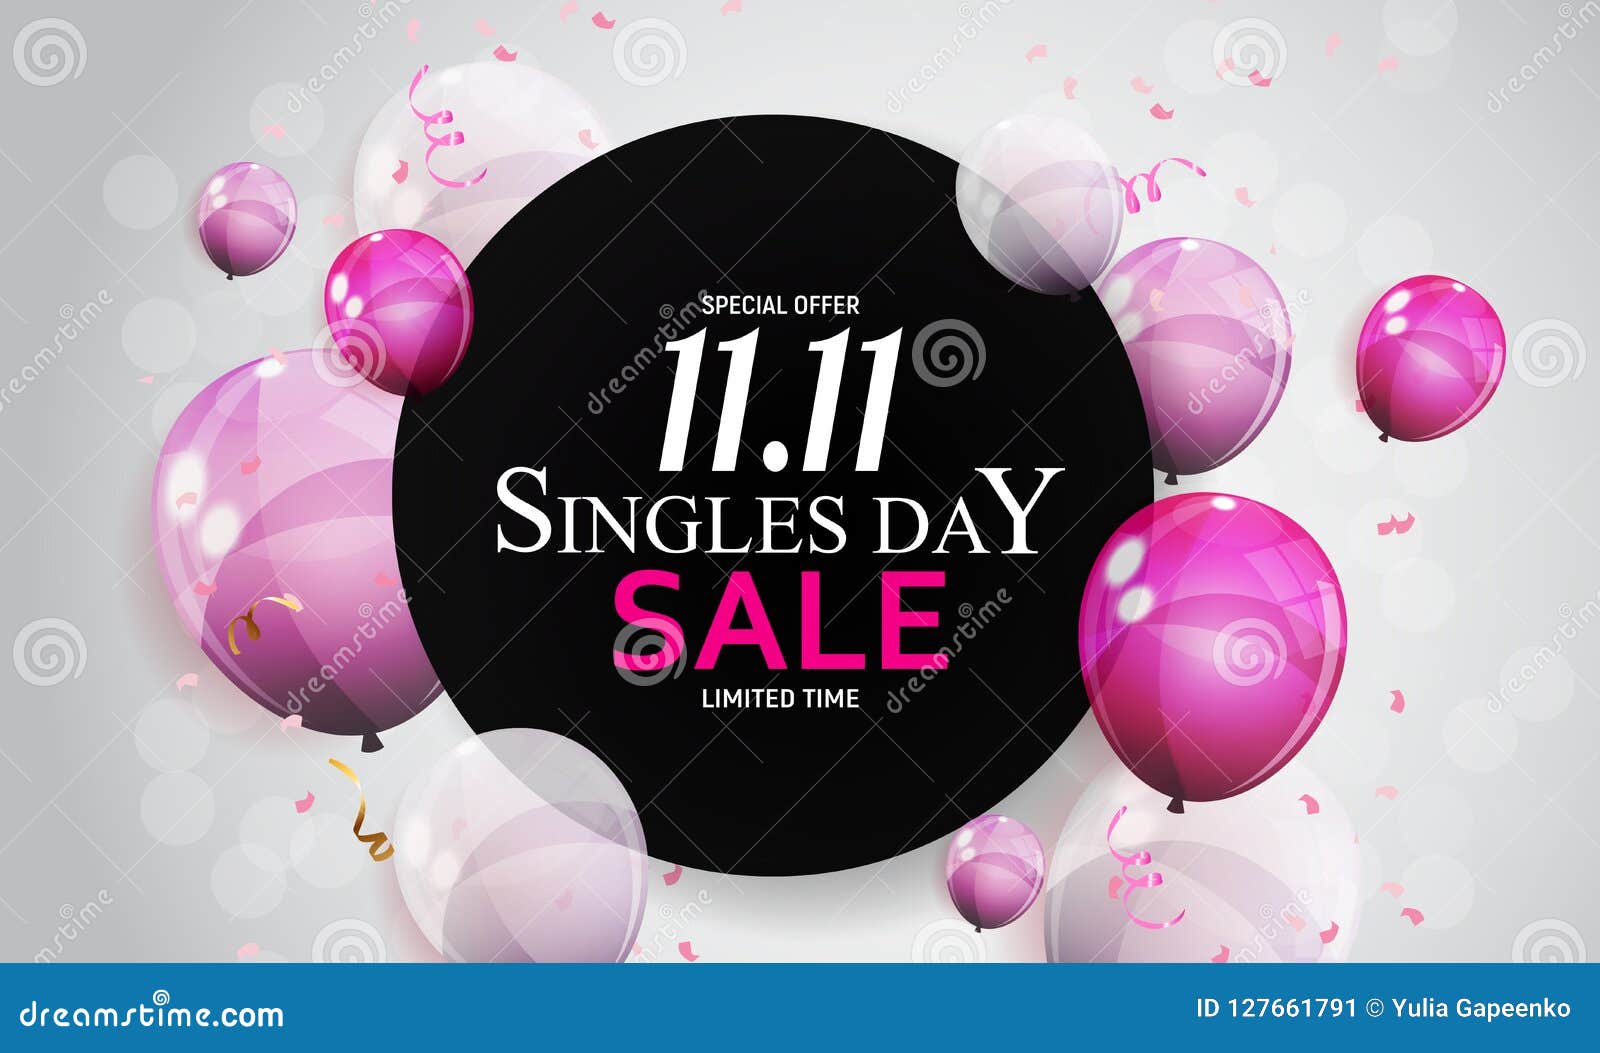 november 11 singles day sale.  